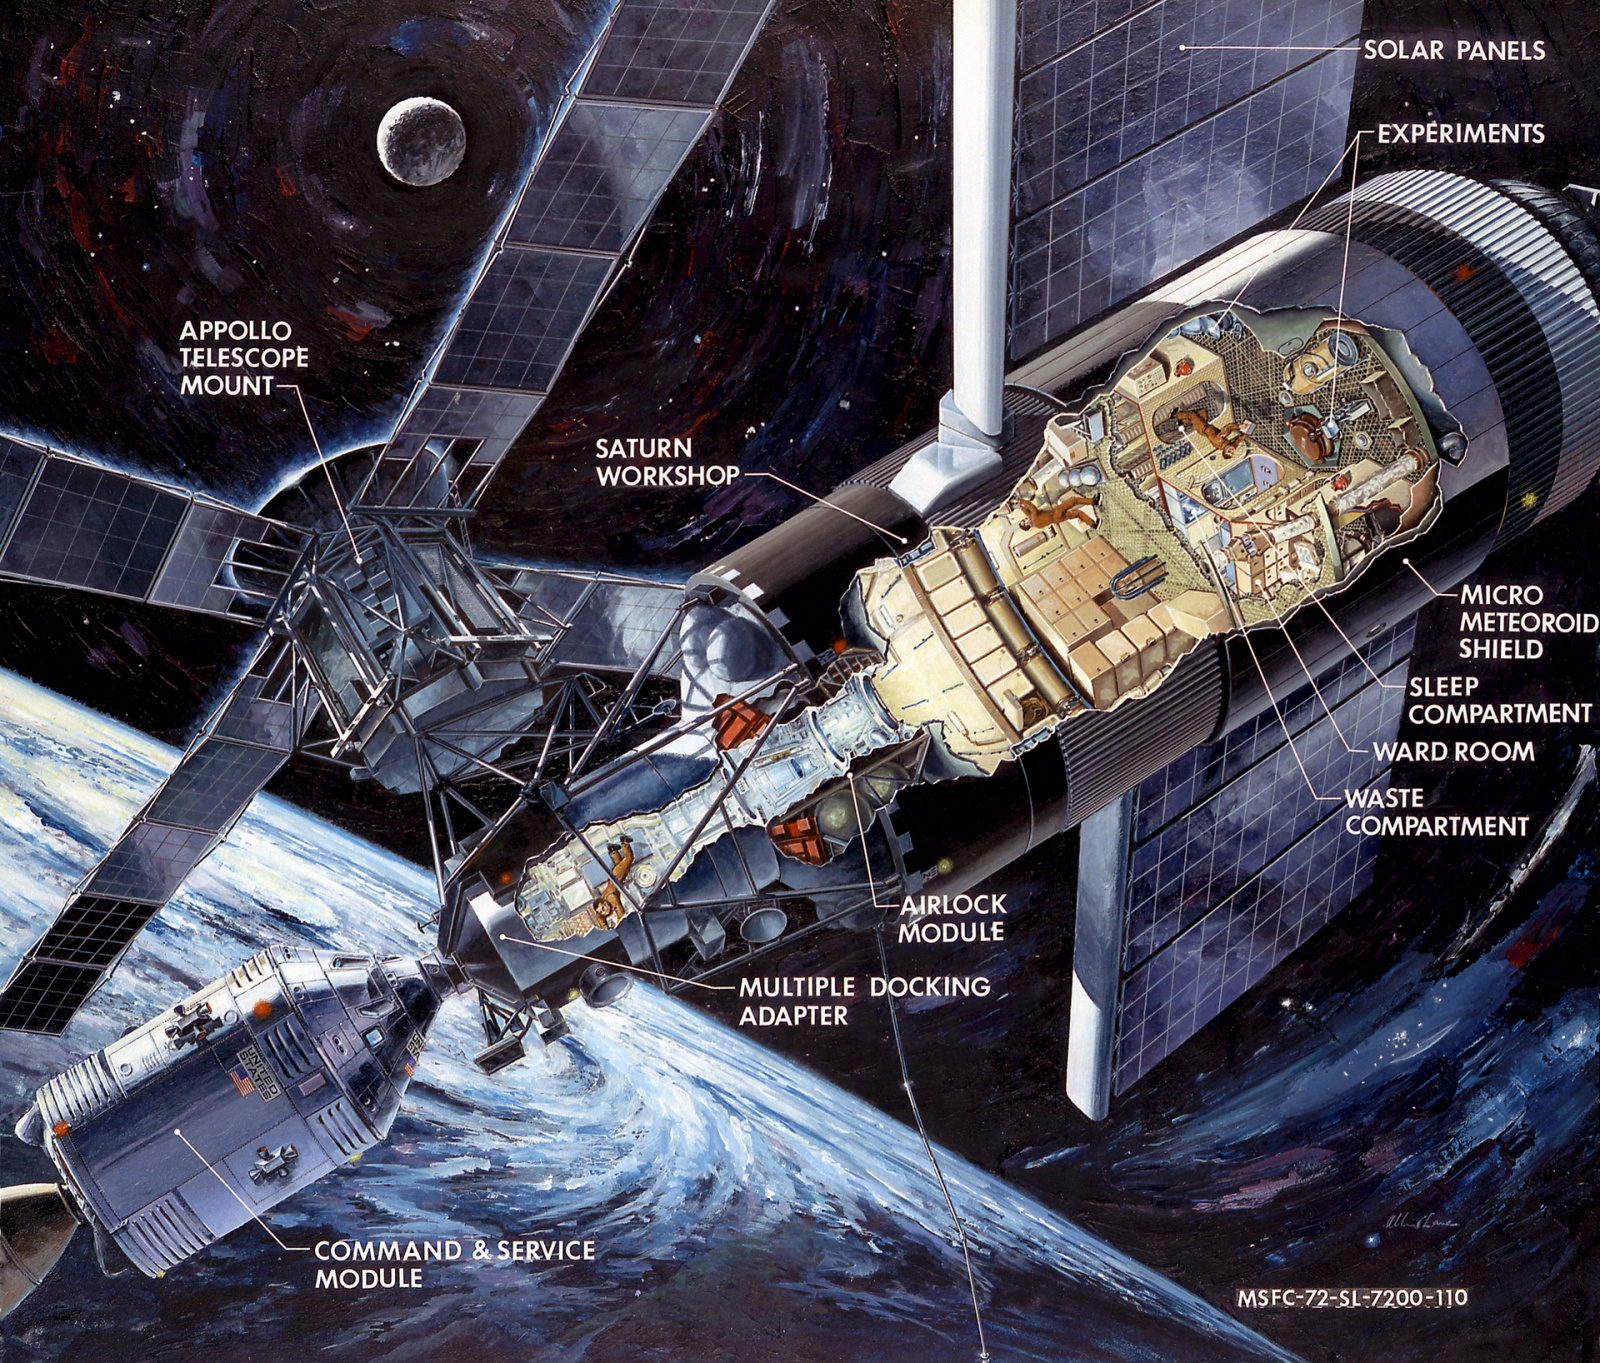 НАСА и история непостоянства задач агентства - 4